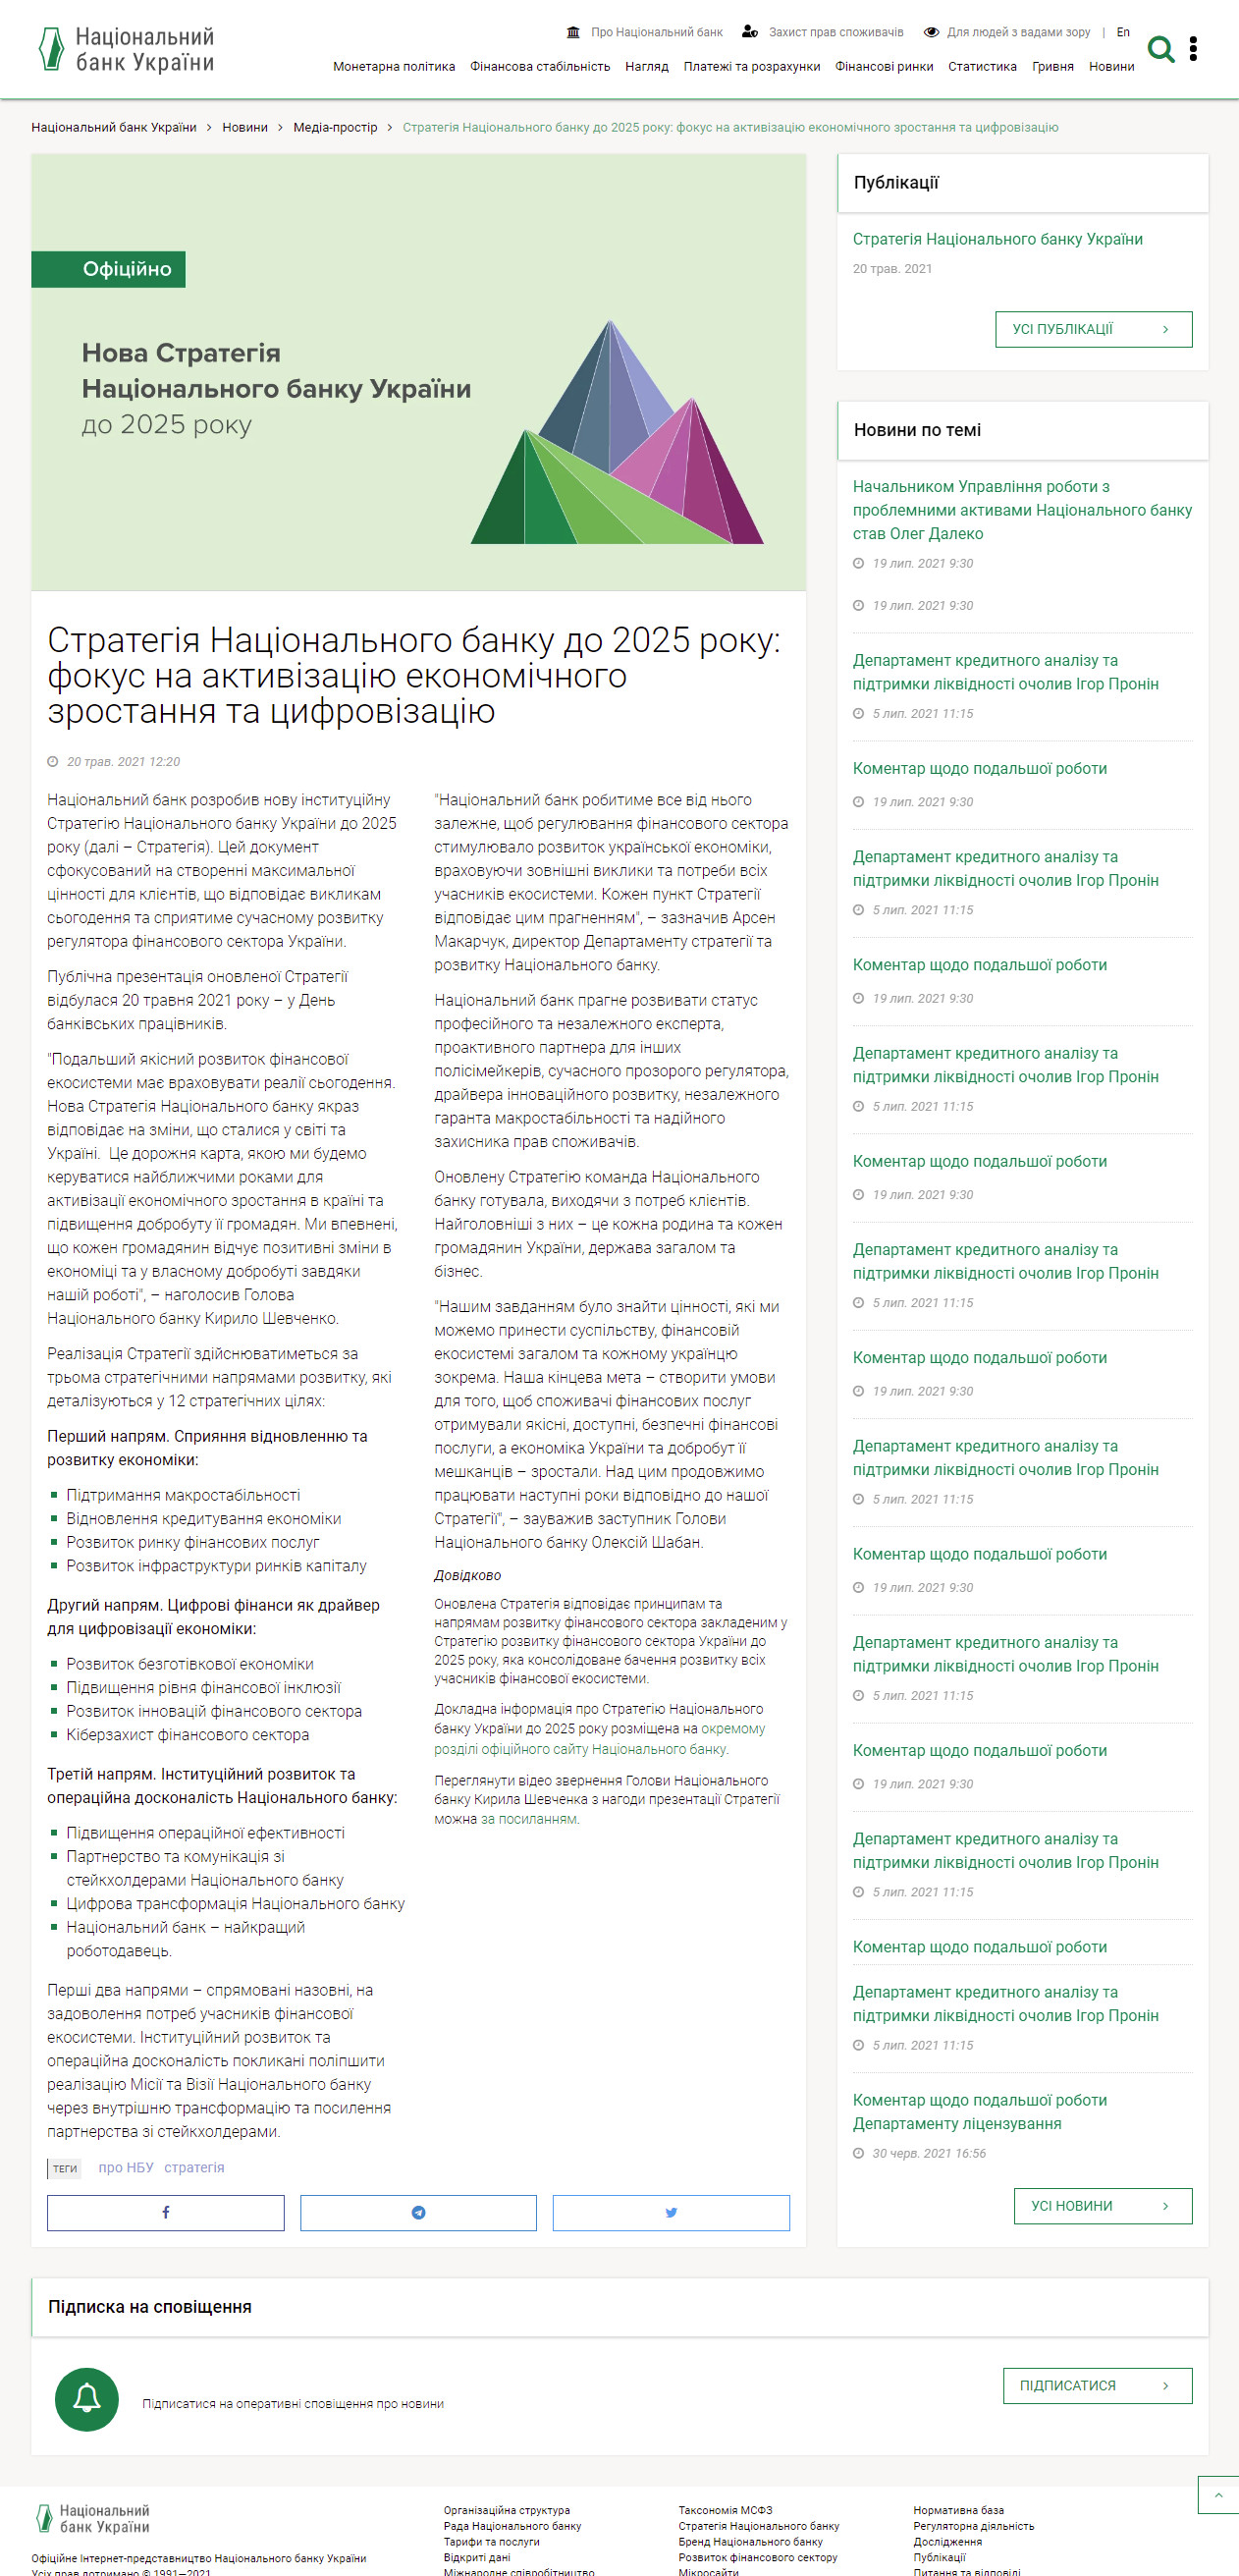 https://bank.gov.ua/ua/news/all/strategiya-natsionalniy-bank-do-2025-roku-fokus-na-aktivizatsiyu-ekonomichnogo-zrostannya-ta-tsifrovizatsiyu